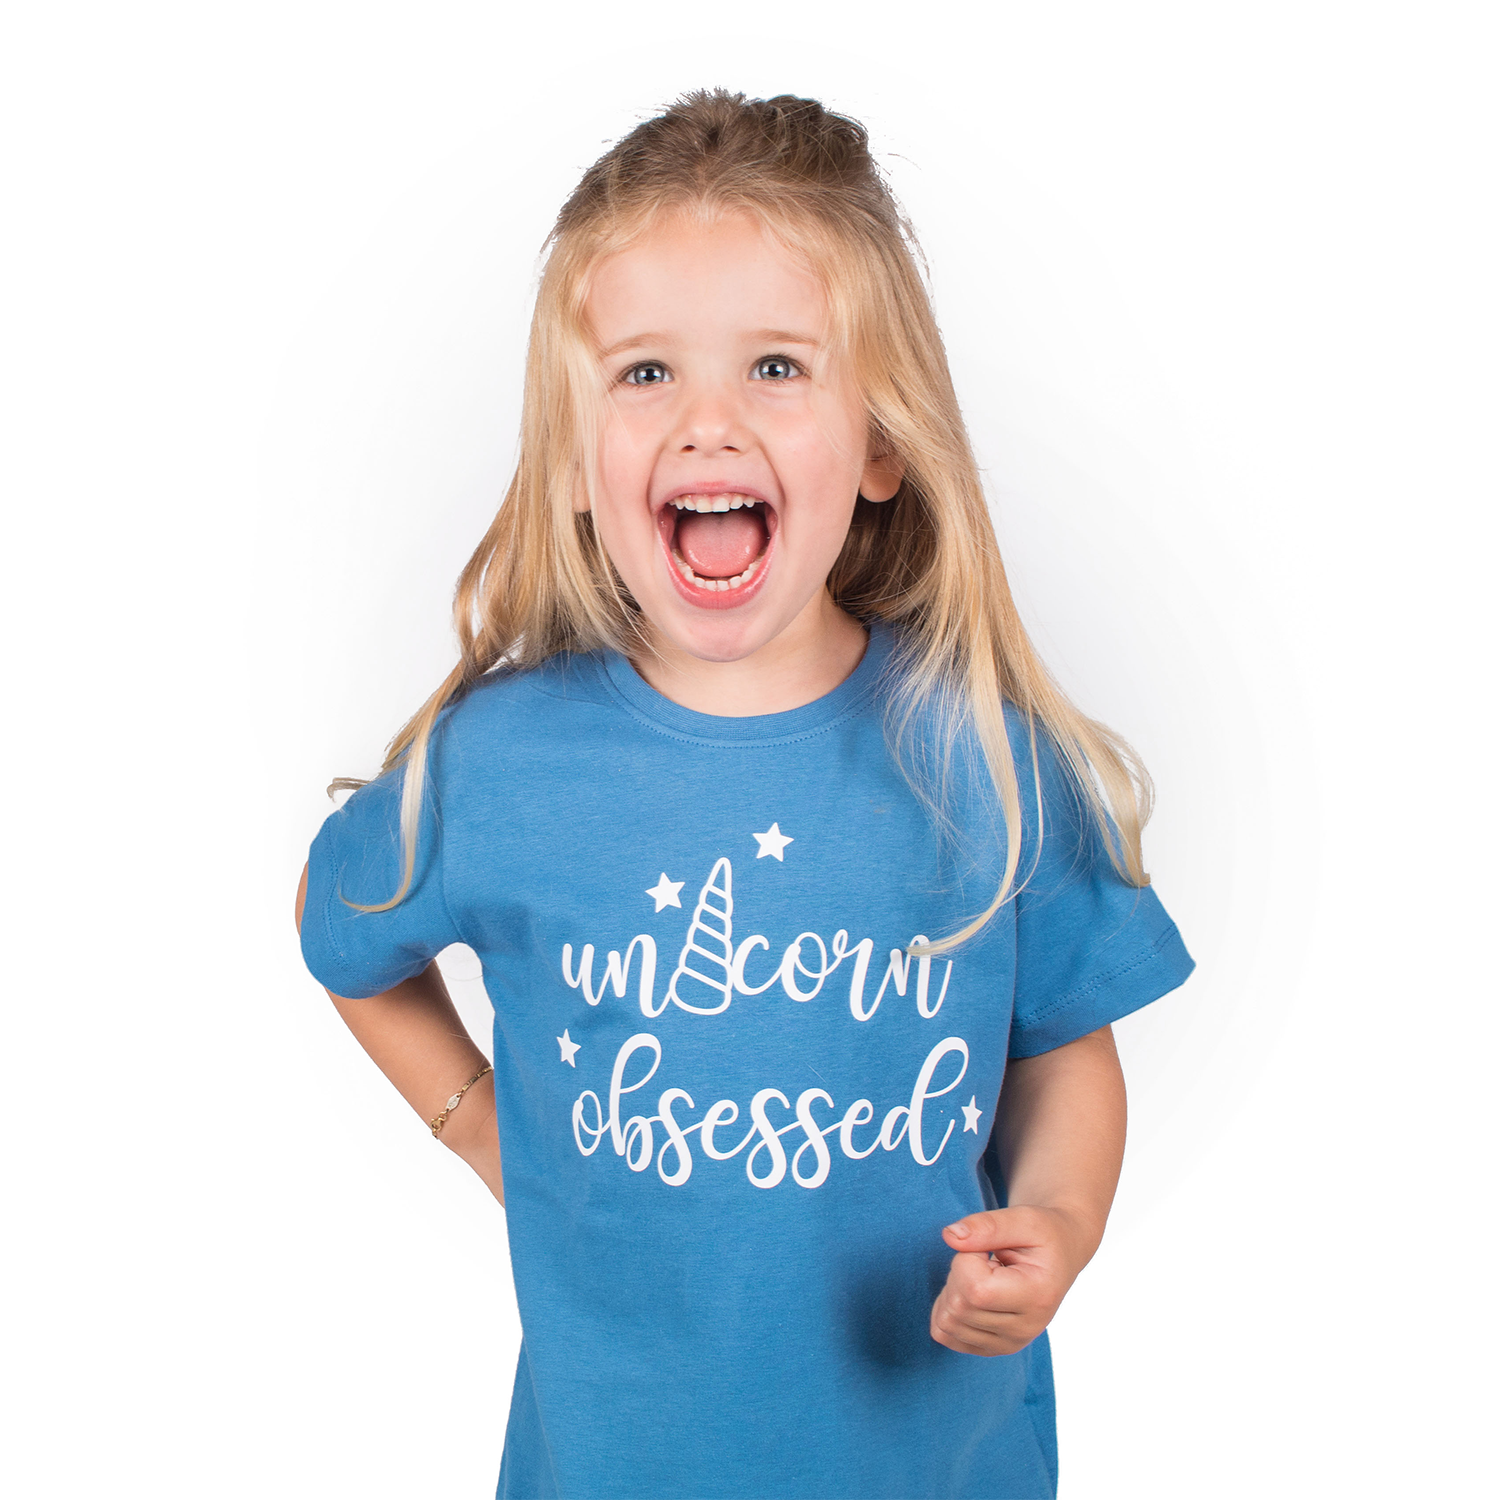 'Unicorn obsessed' kids shortsleeve shirt